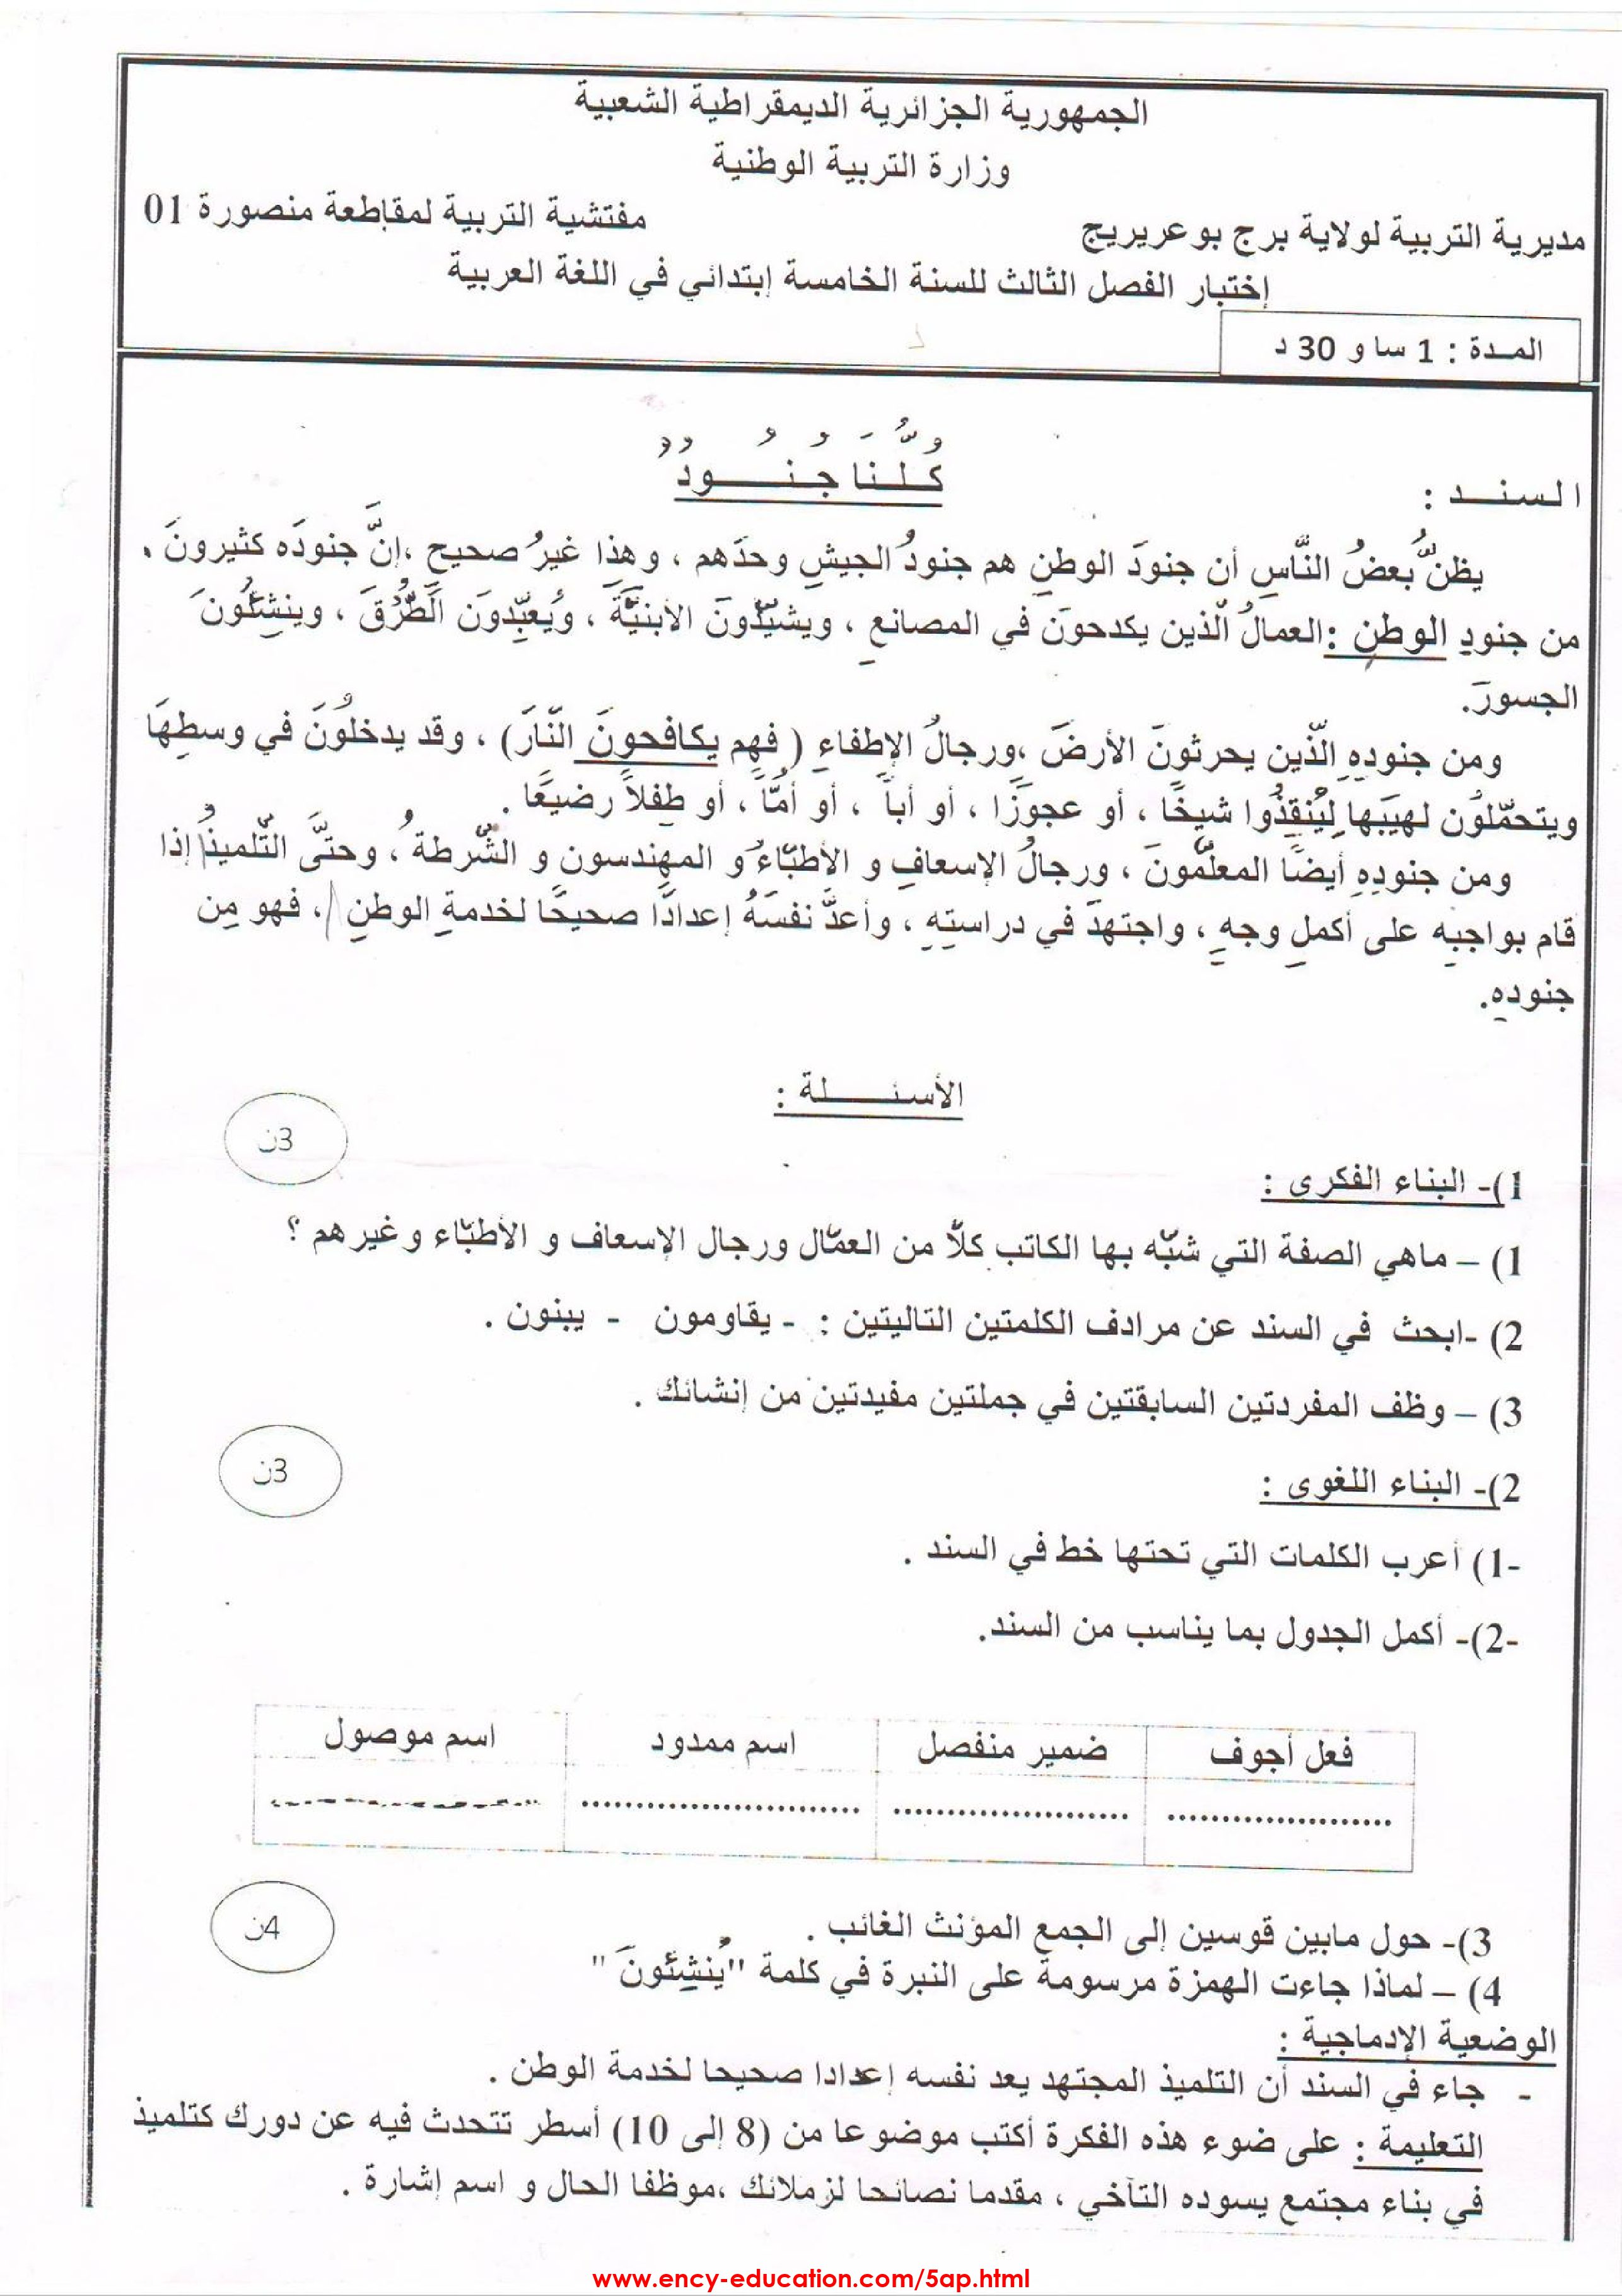 اختبارات الفصل الثالث مادة اللغة العربية 5 ابتدائي اكثر من 70